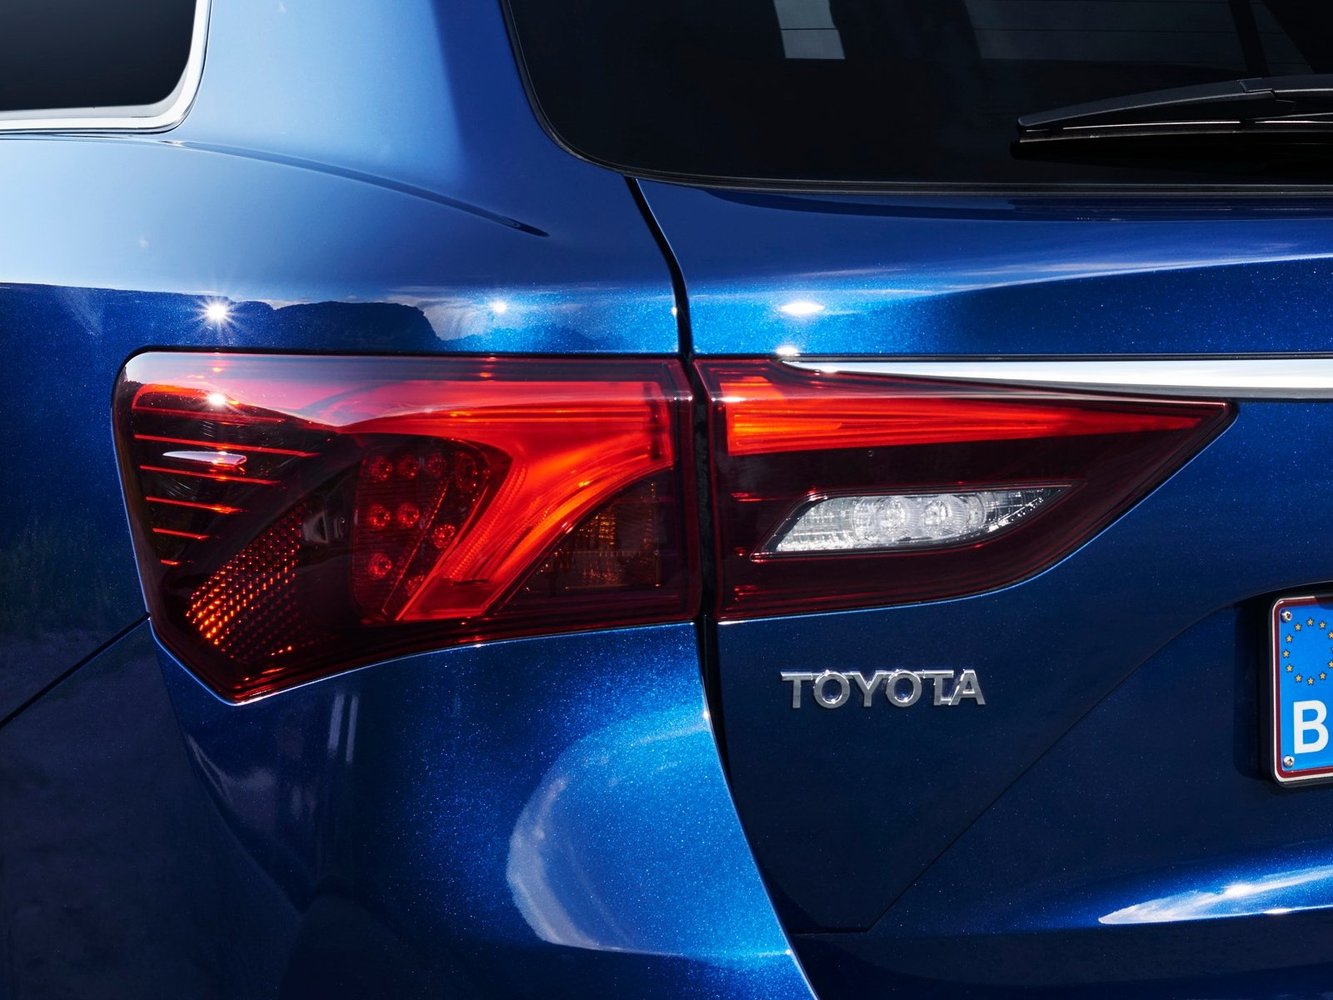 универсал Toyota Avensis 2015 - 2016г выпуска модификация 1.6 MT (112 л.с.)